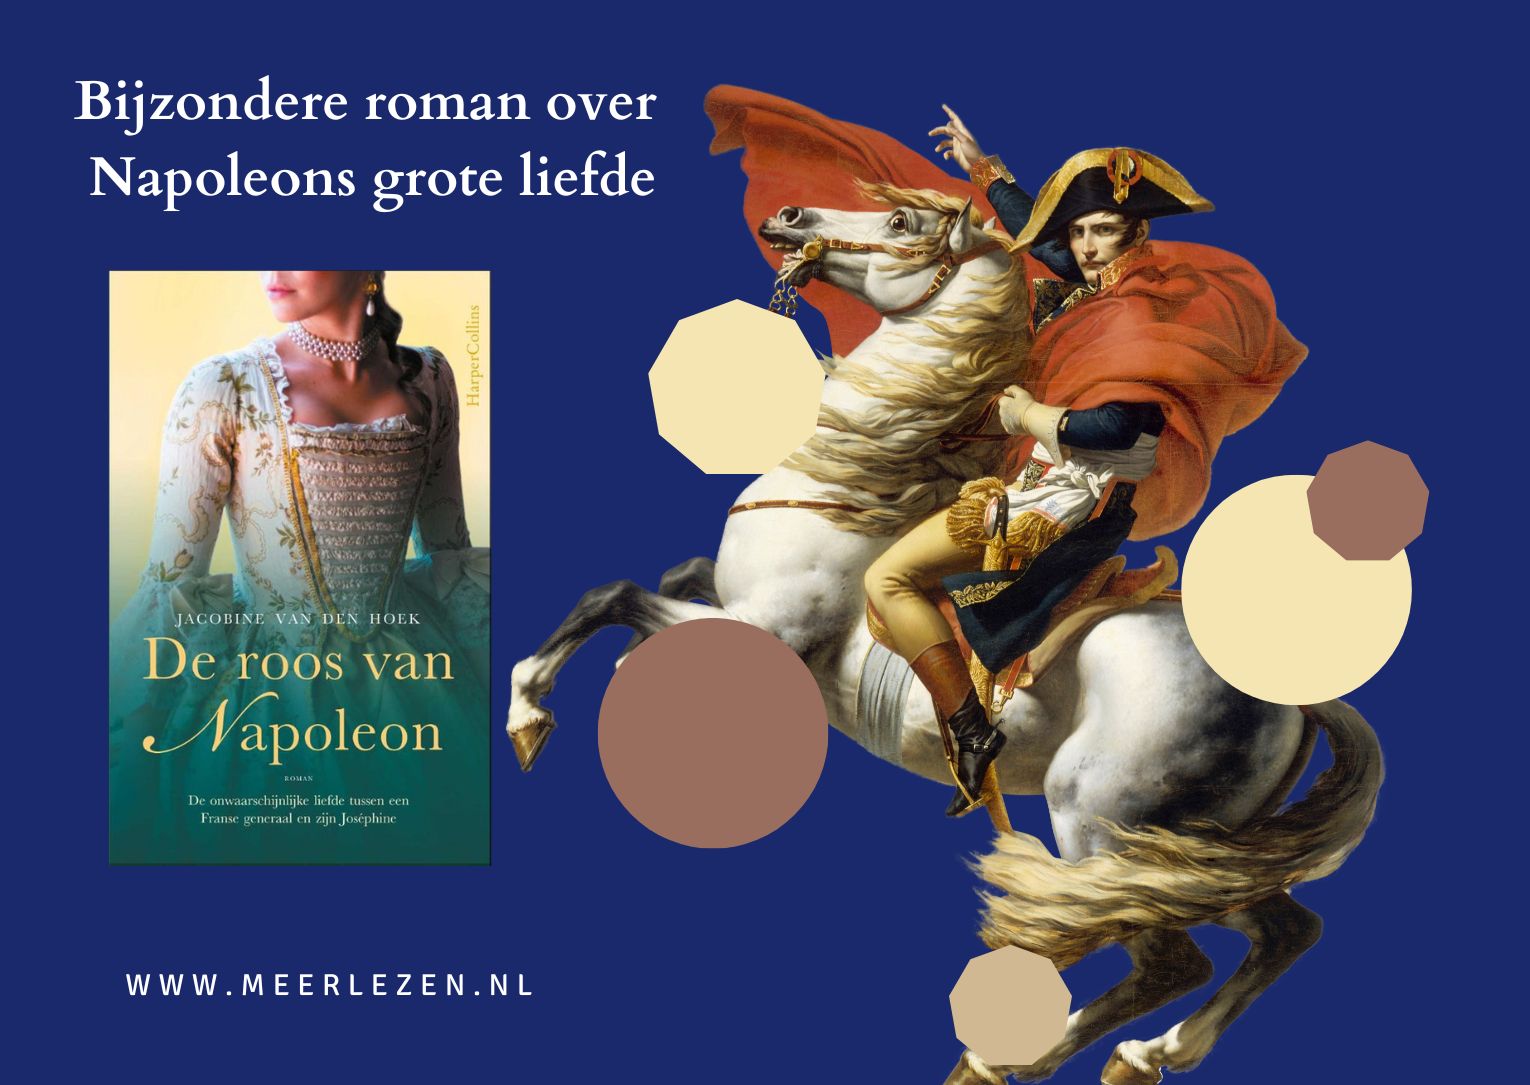 Recensie: De roos van Napoleon, Jacobine van den Hoek